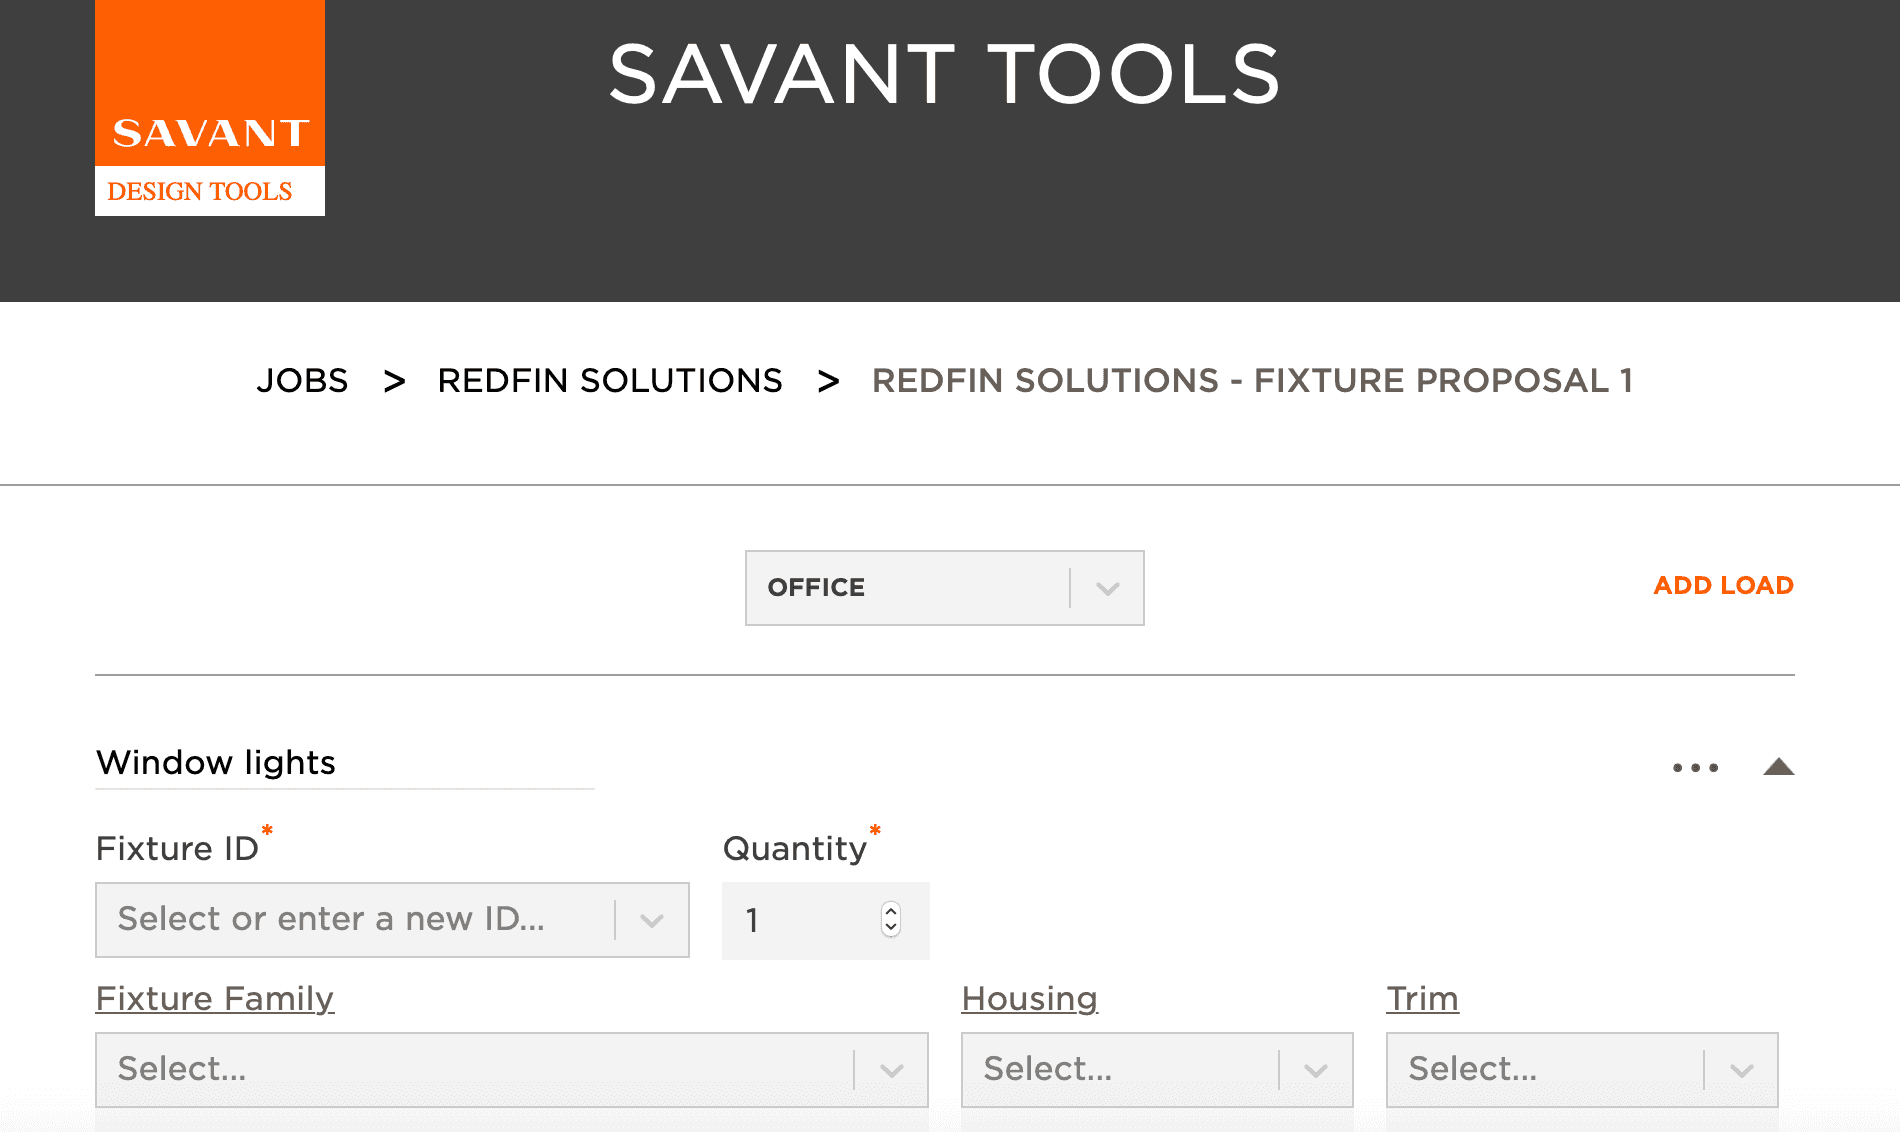 Savant design tools app